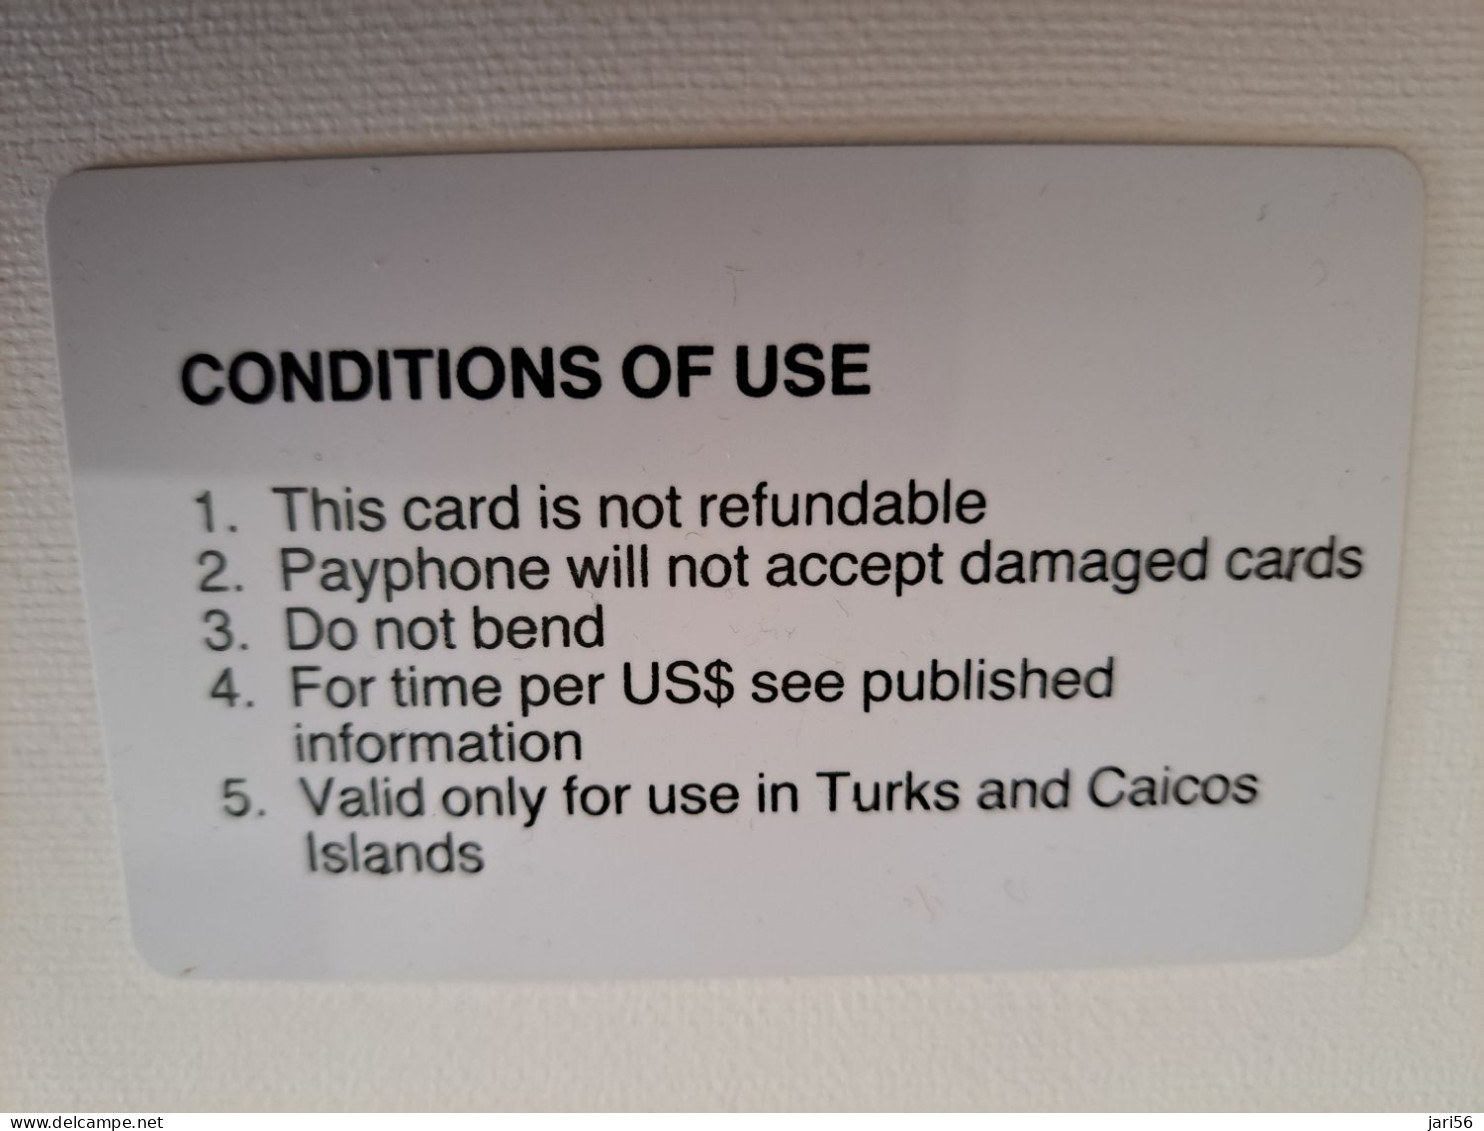 TURKS & CAICOS ISLANDS $ 20,-  AUTELCA CARDS 1E ISSUE  Prepaid      Fine Used Card  **13473** - Turks E Caicos (Isole)